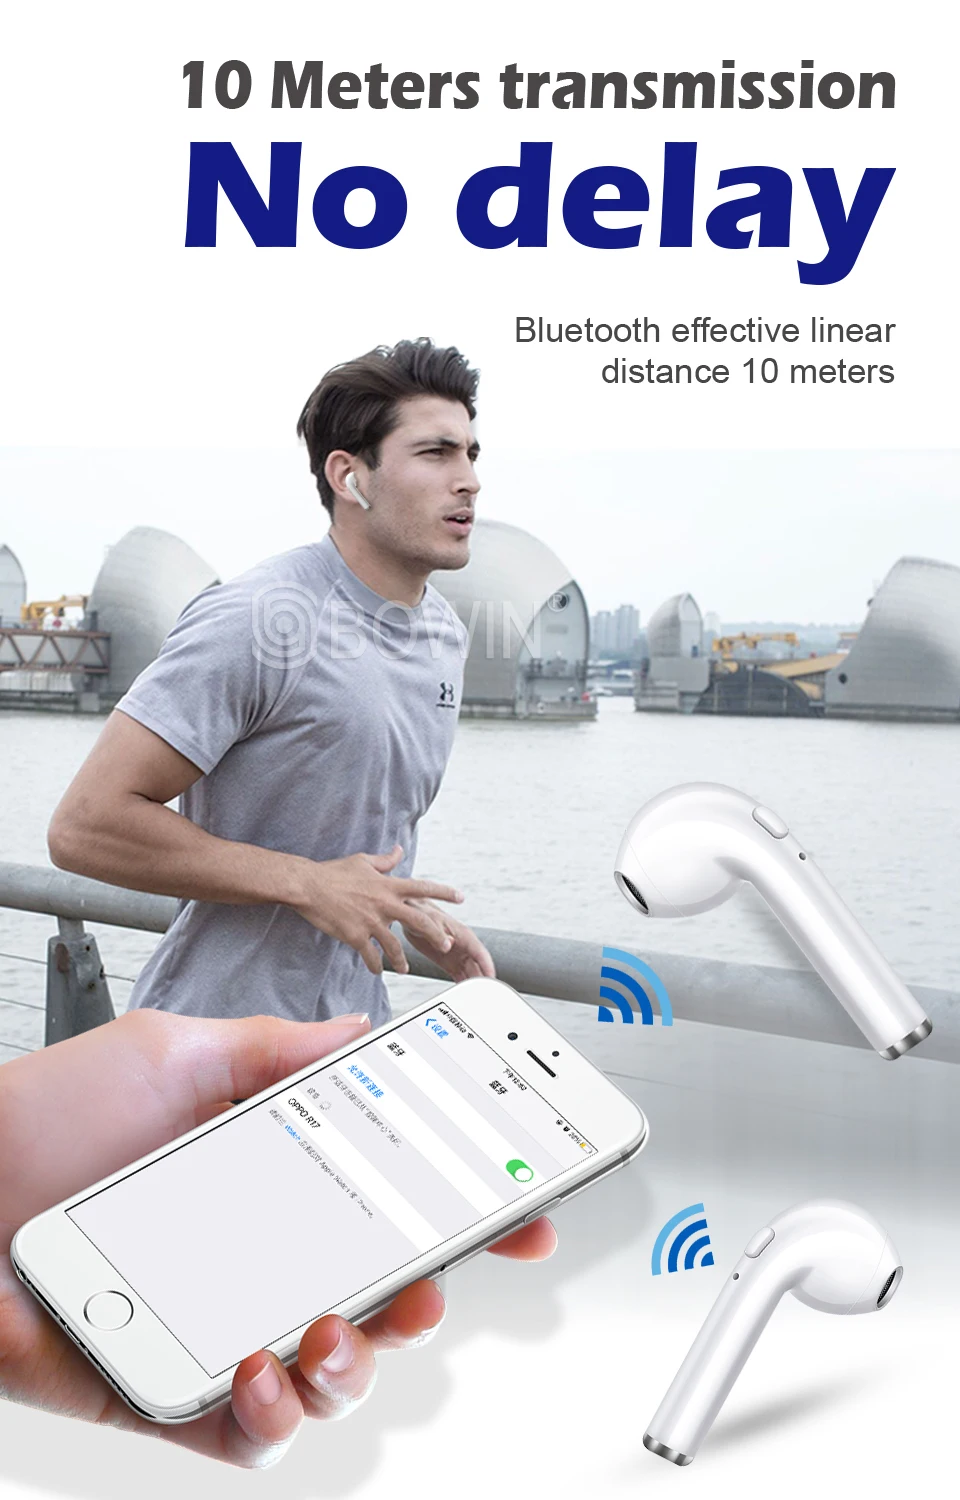 BOWIN I7s TWS Bluetooth наушники 5,0 стерео наушники Bluetooth гарнитура с зарядкой Pod беспроводные гарнитуры для всех смартфонов